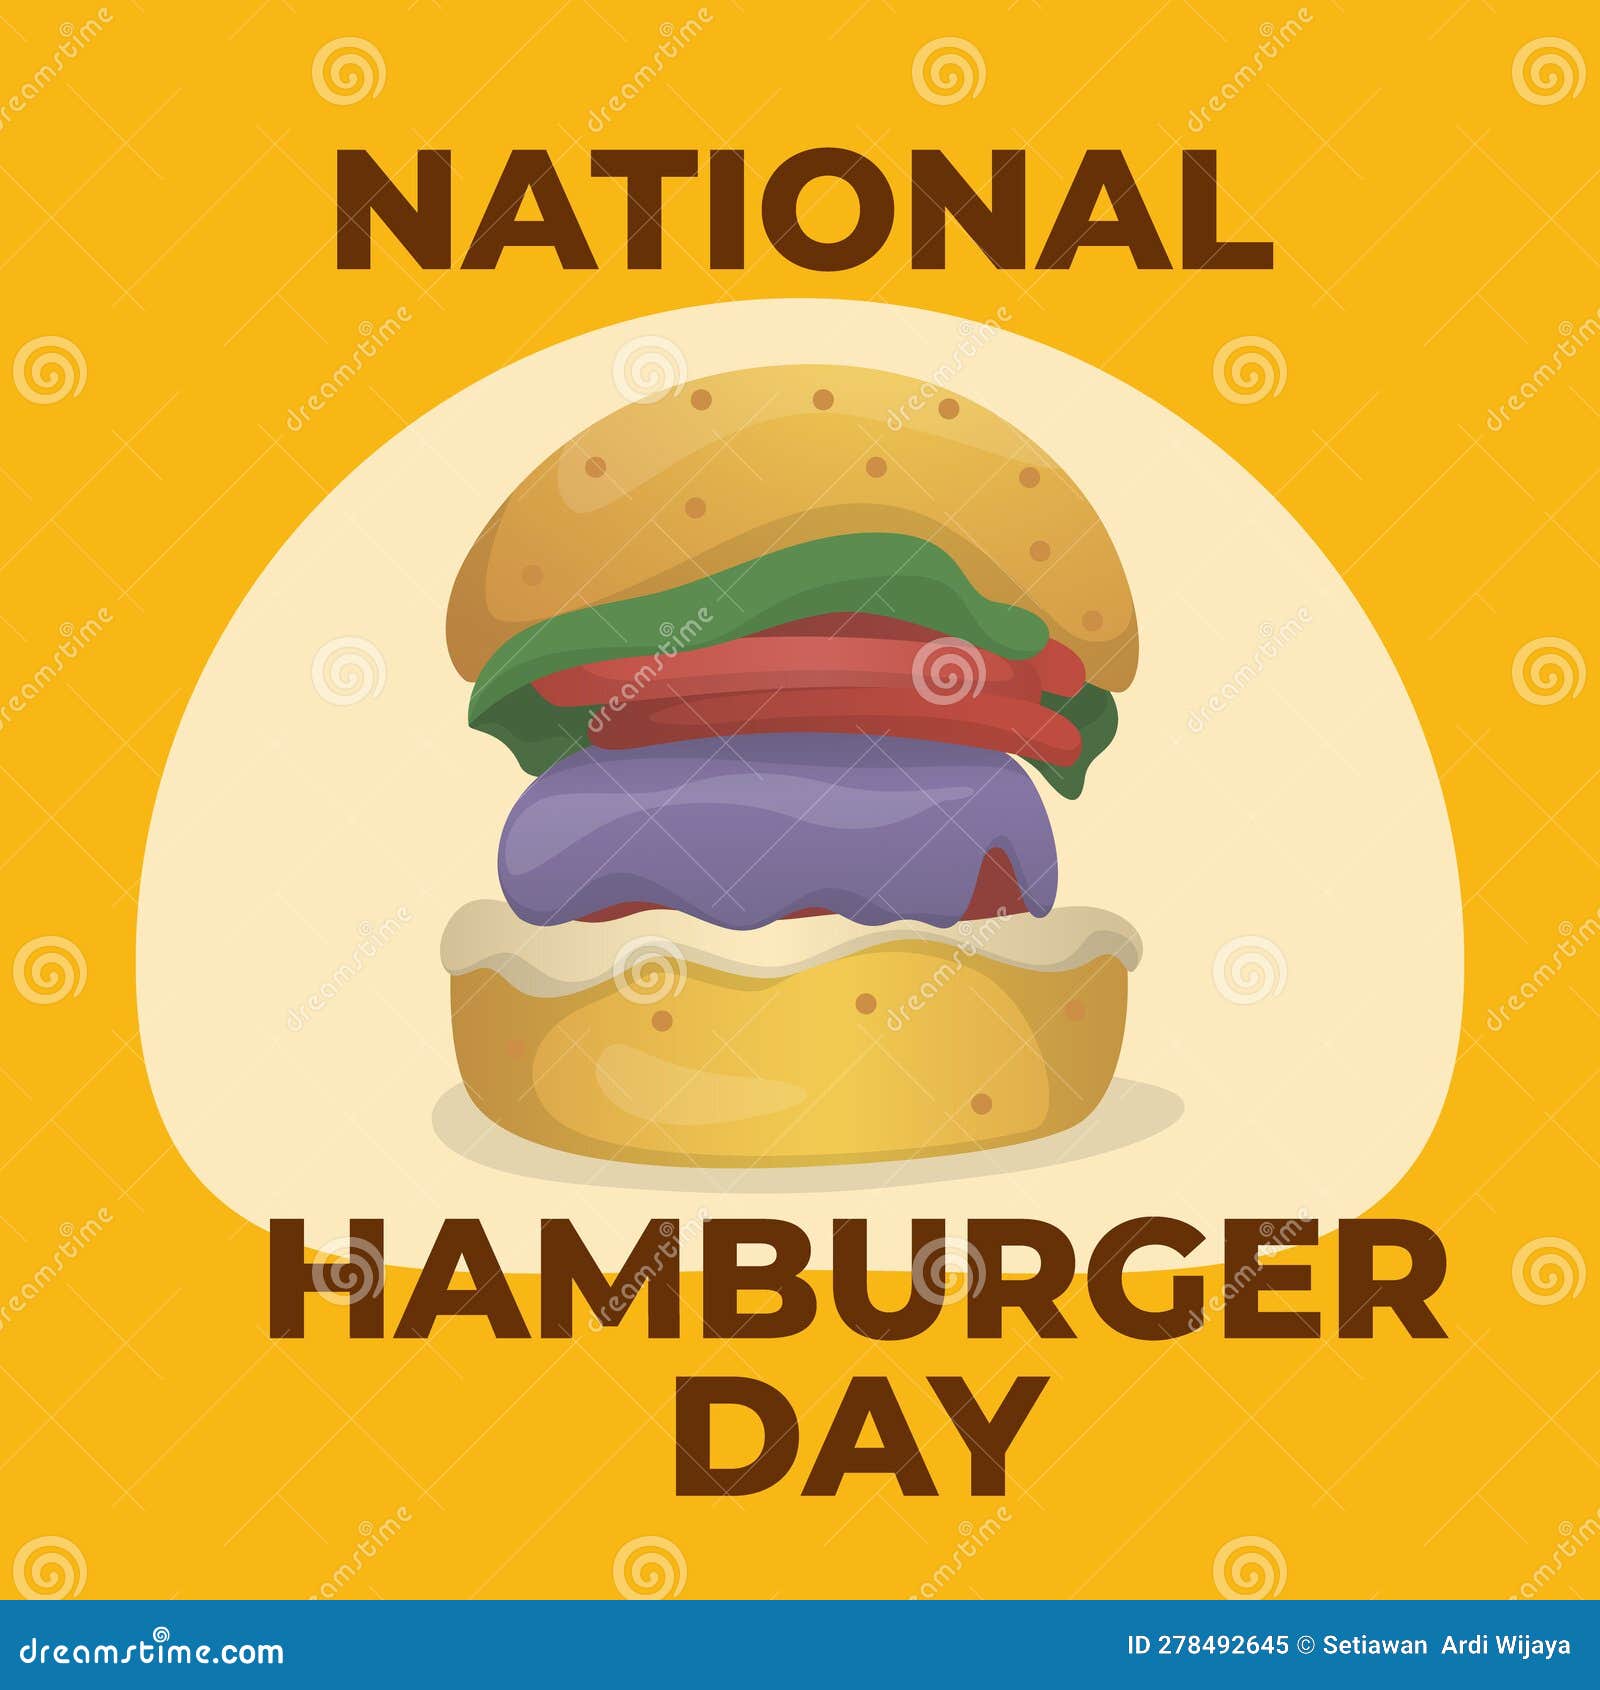 Vector Graphic of National Hamburger Day Good for National Hamburger